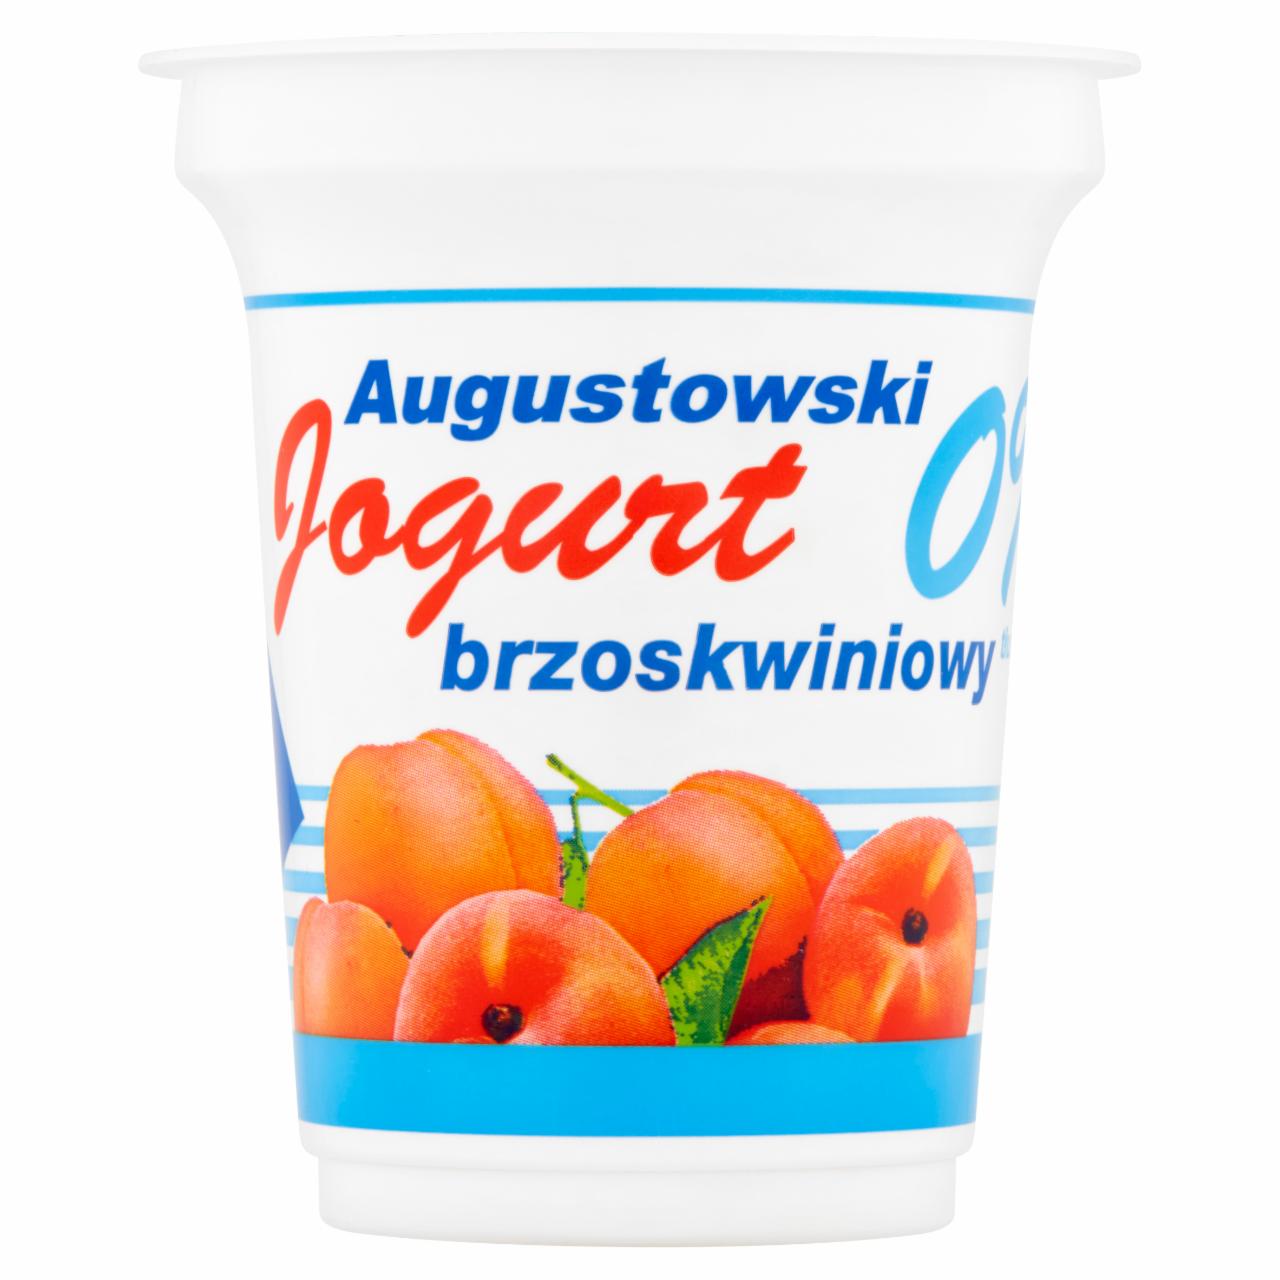 Zdjęcia - Mlekpol Jogurt Augustowski brzoskwiniowy 0% tłuszczu 350 g